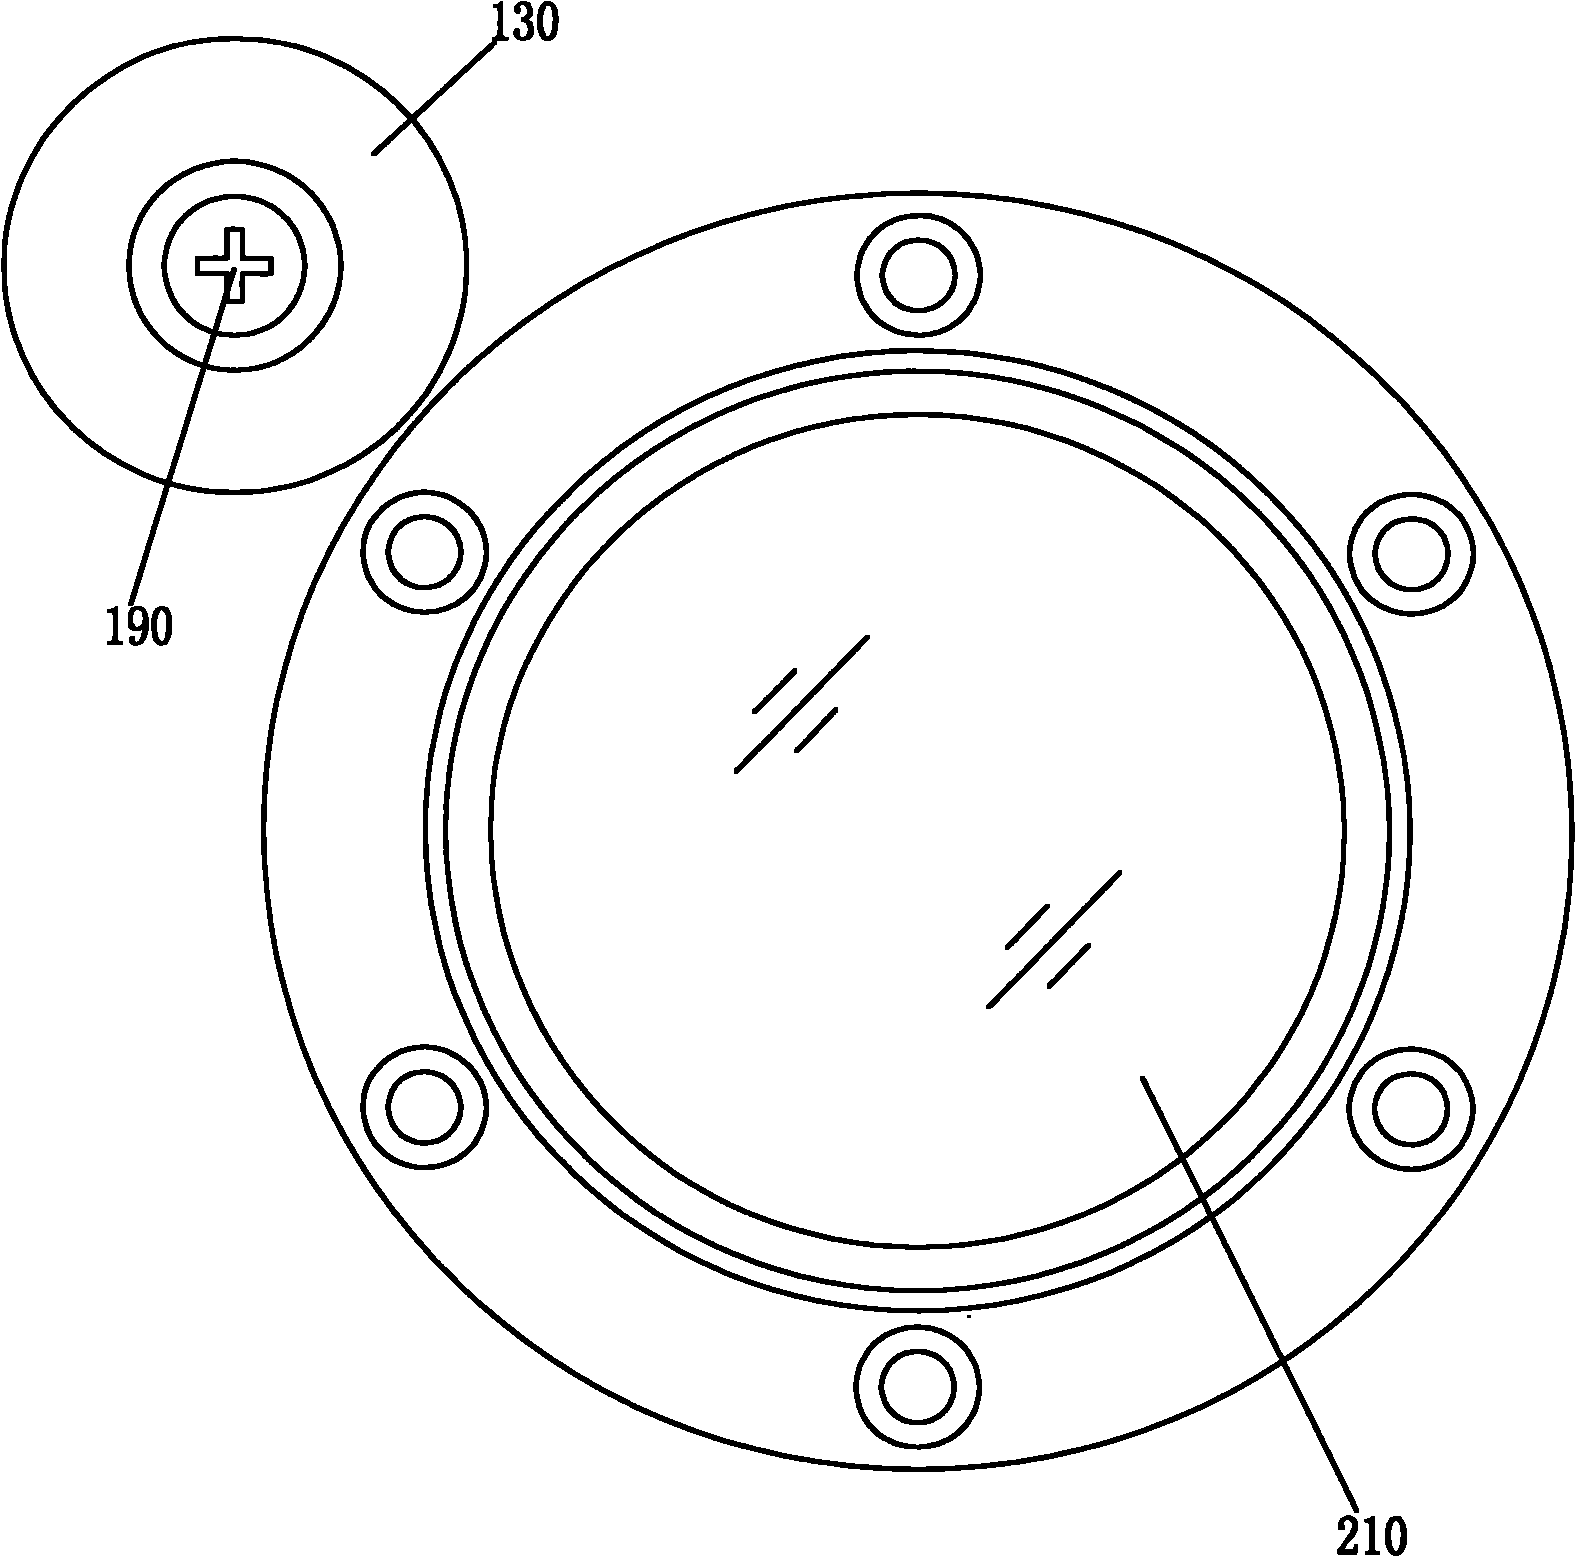 Baffle plate mechanism of observing window